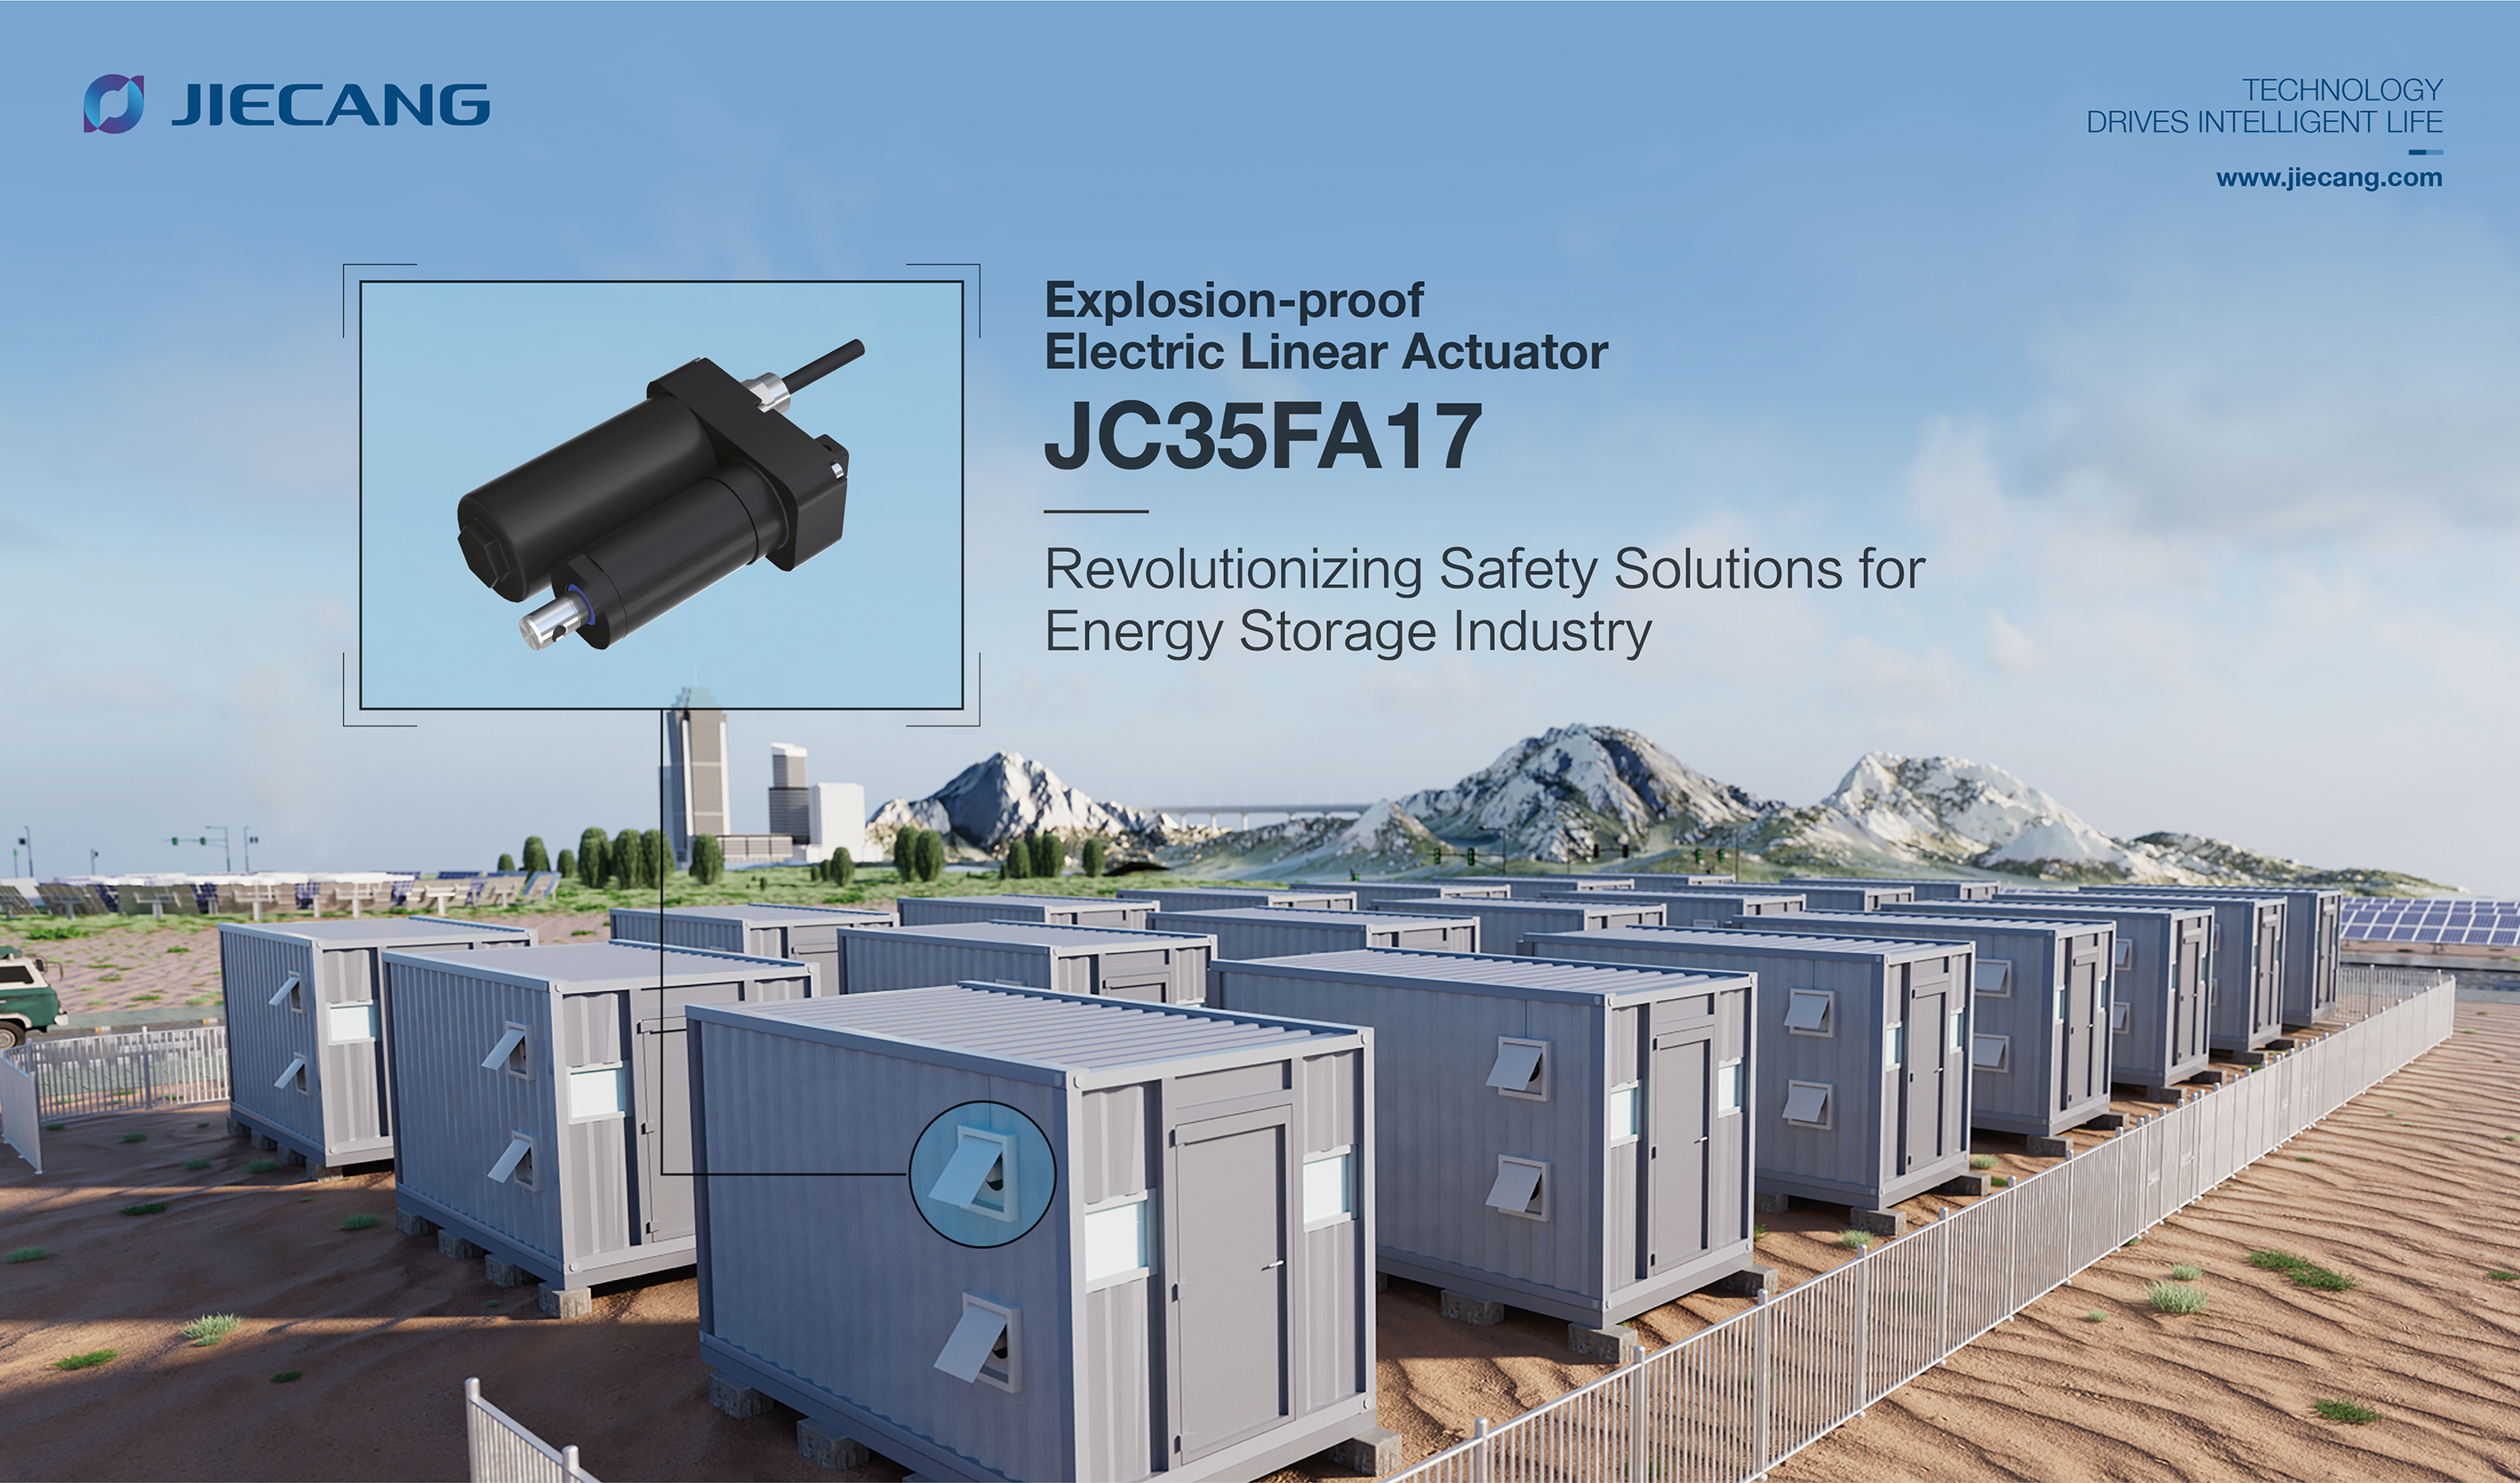 Entdecken Sie JC35FA17: Ihre neue explosionsgeschützte Sicherheitslösung für die Energiespeicherung